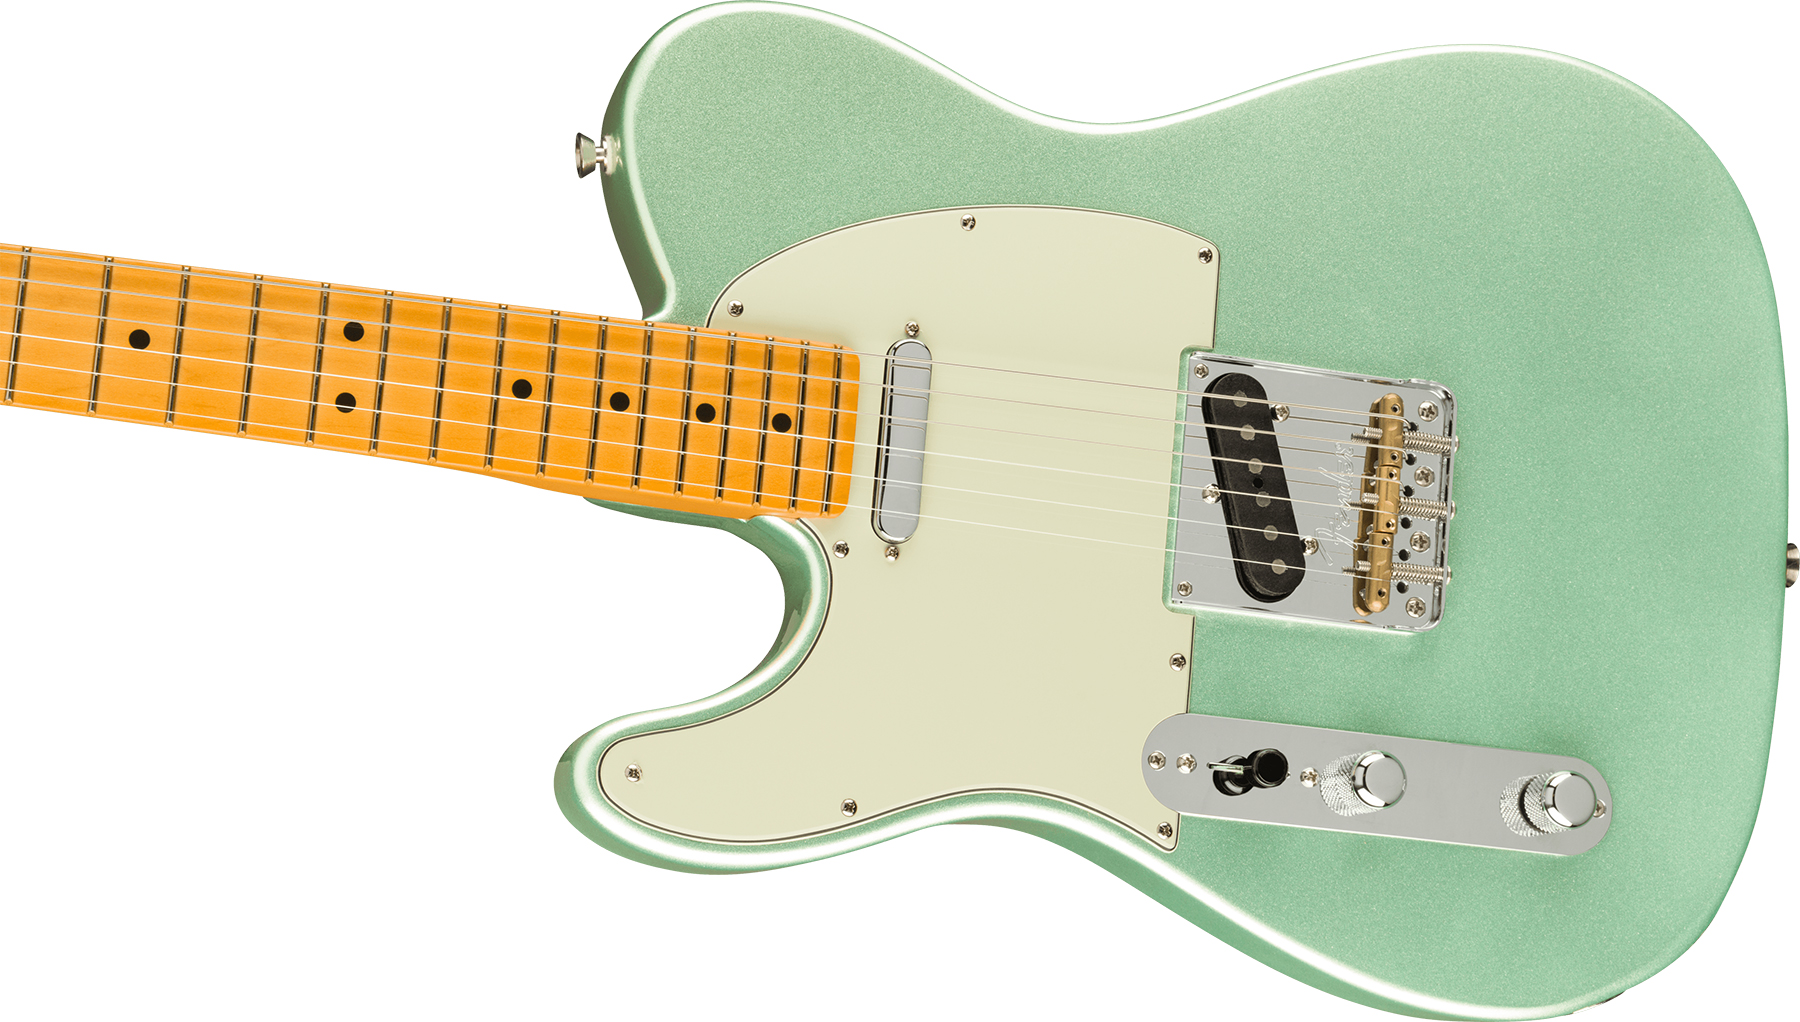 Fender Tele American Professional Ii Lh Gaucher Usa Mn - Mystic Surf Green - Linkshandige elektrische gitaar - Variation 2